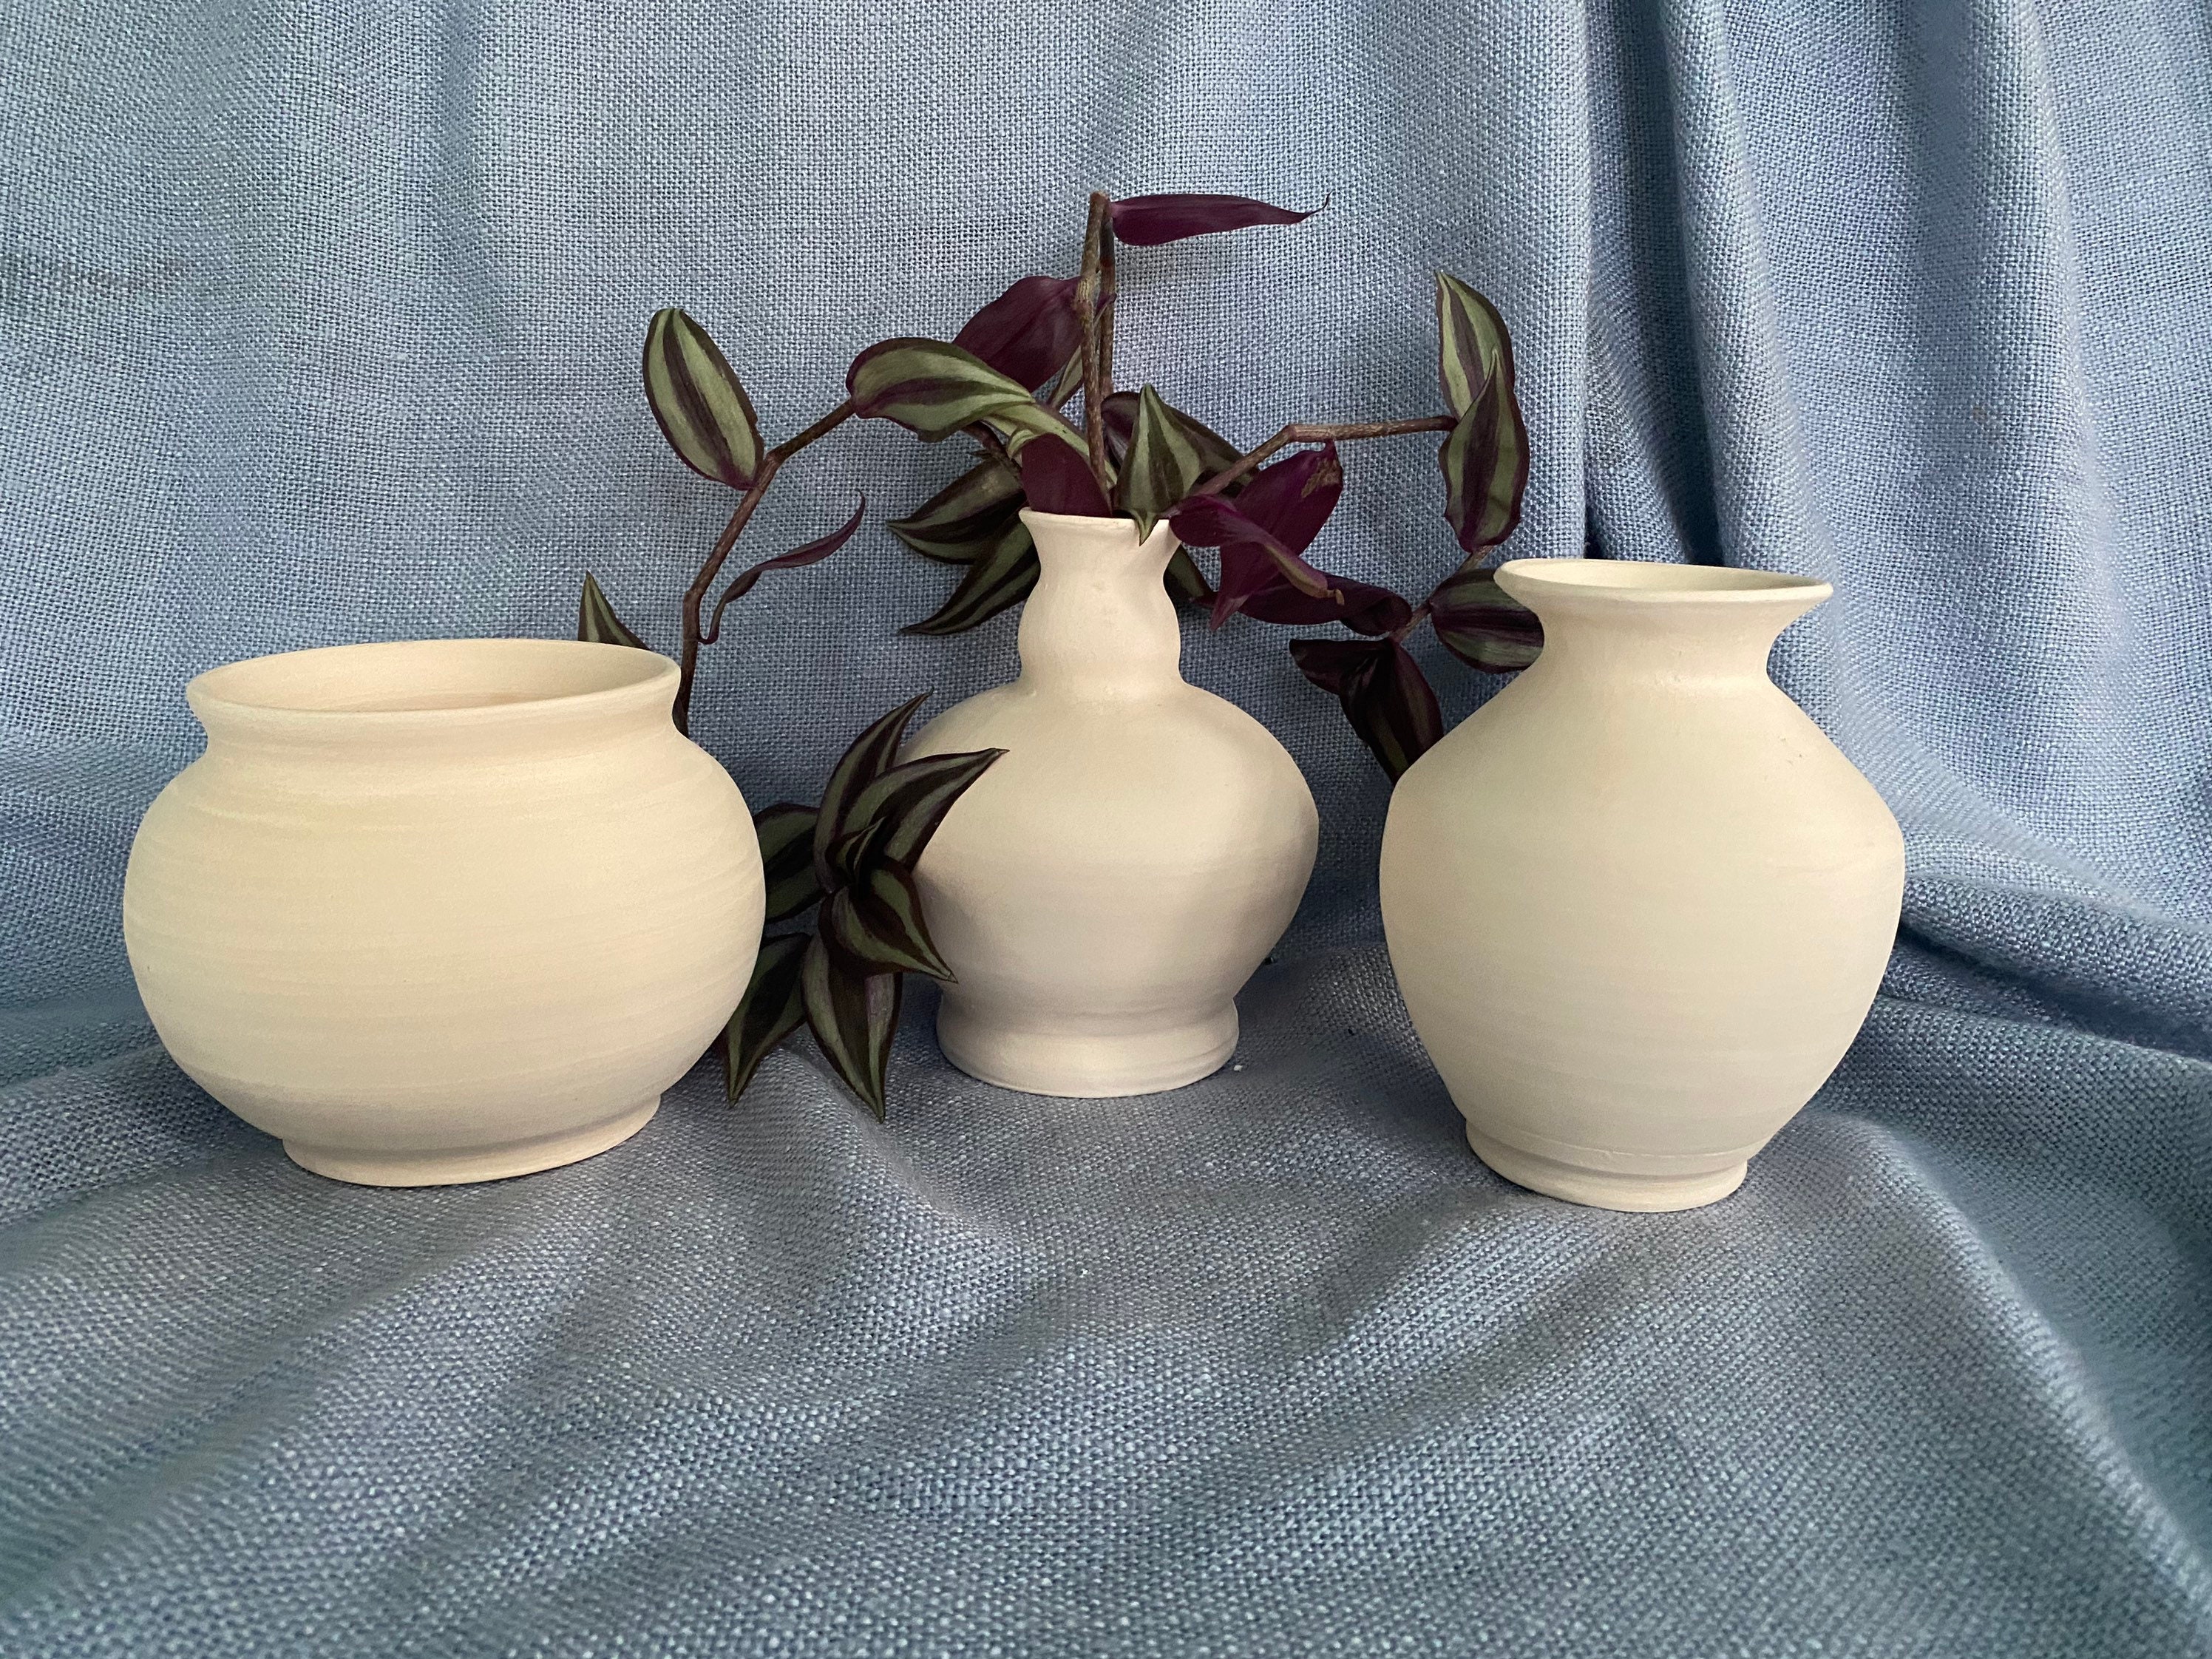 vases en argile blanche, mijoteuses blanches, grès primitif, poterie classique antique, crock primitive, ensemble de vases respectueux